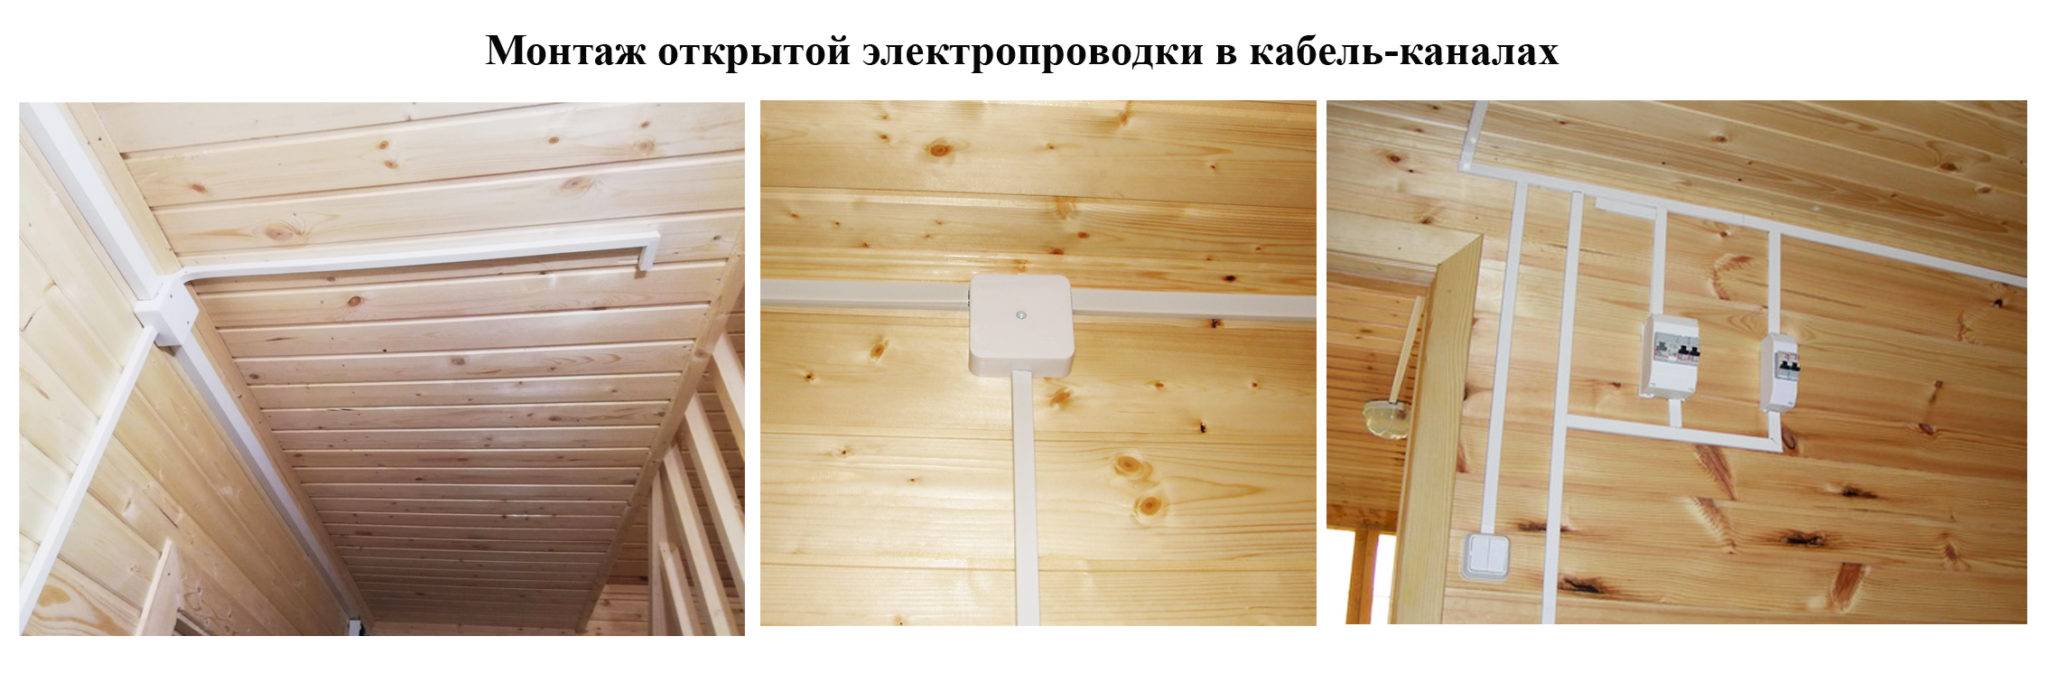 Как сделать проводку в деревянном доме своими руками пошаговая инструкция с фото пошагово